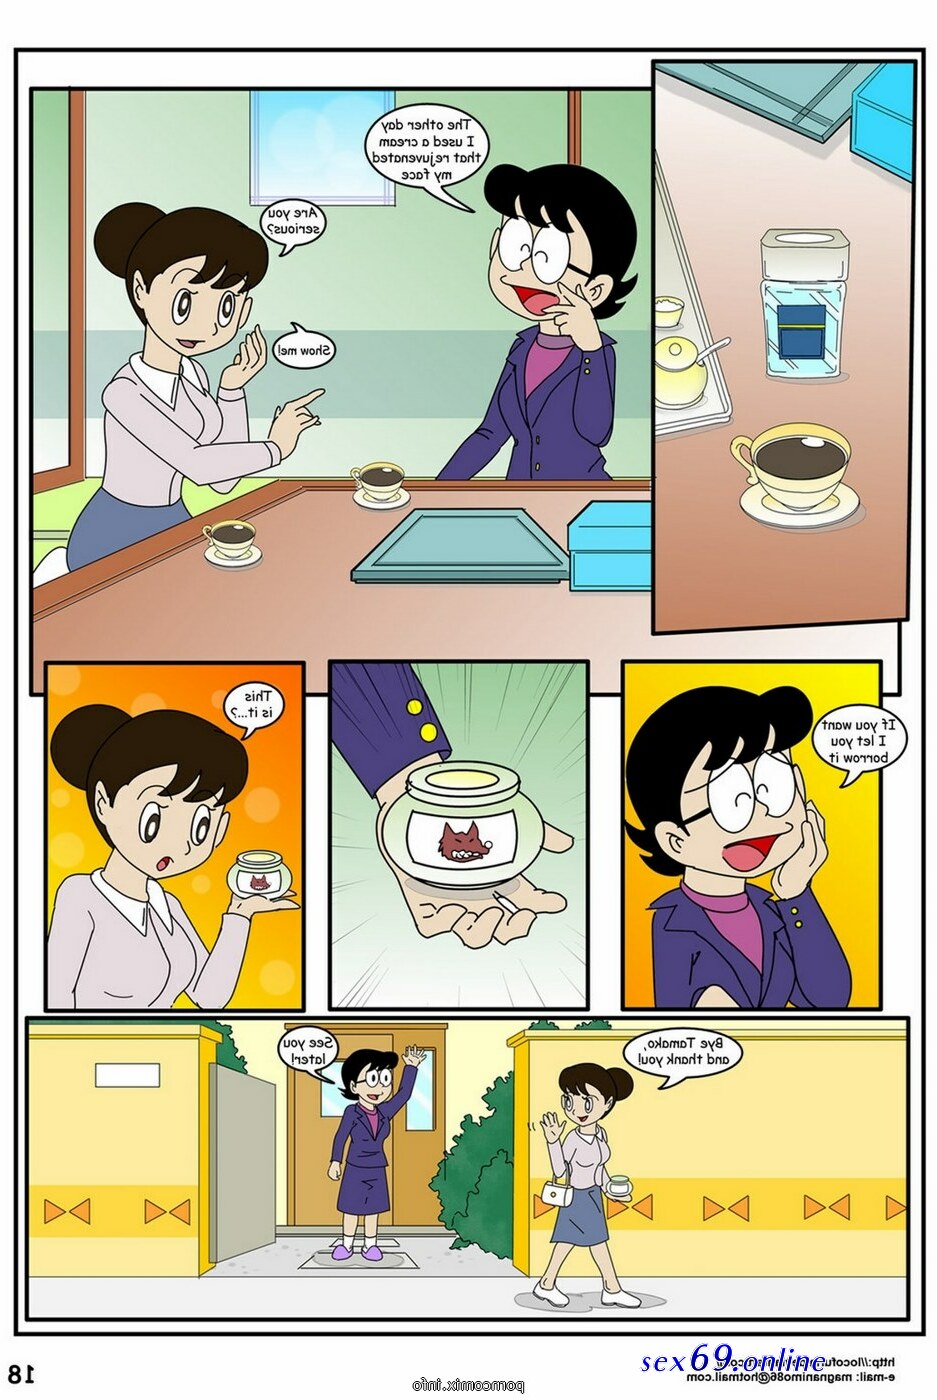 Doraemon Cartoon Sex Video - sex cartoon doramon comic - Sexy photos